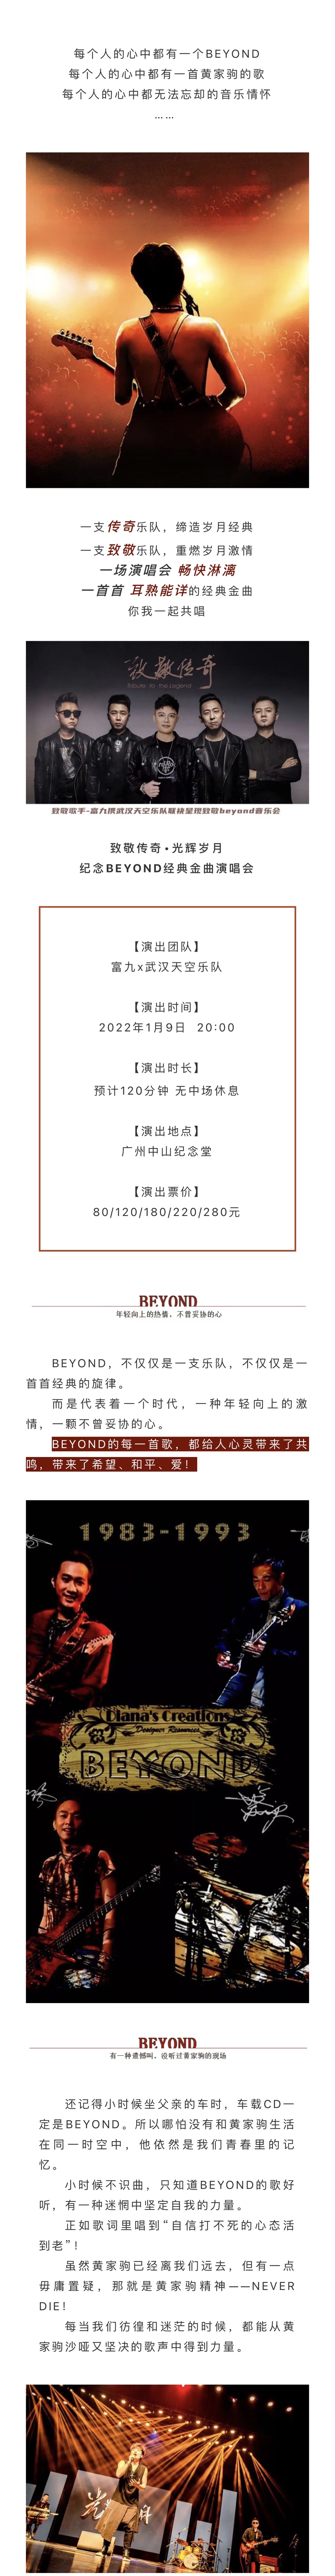 2022致敬传奇∙光辉岁月纪念BEYOND经典金曲音乐会-广州站